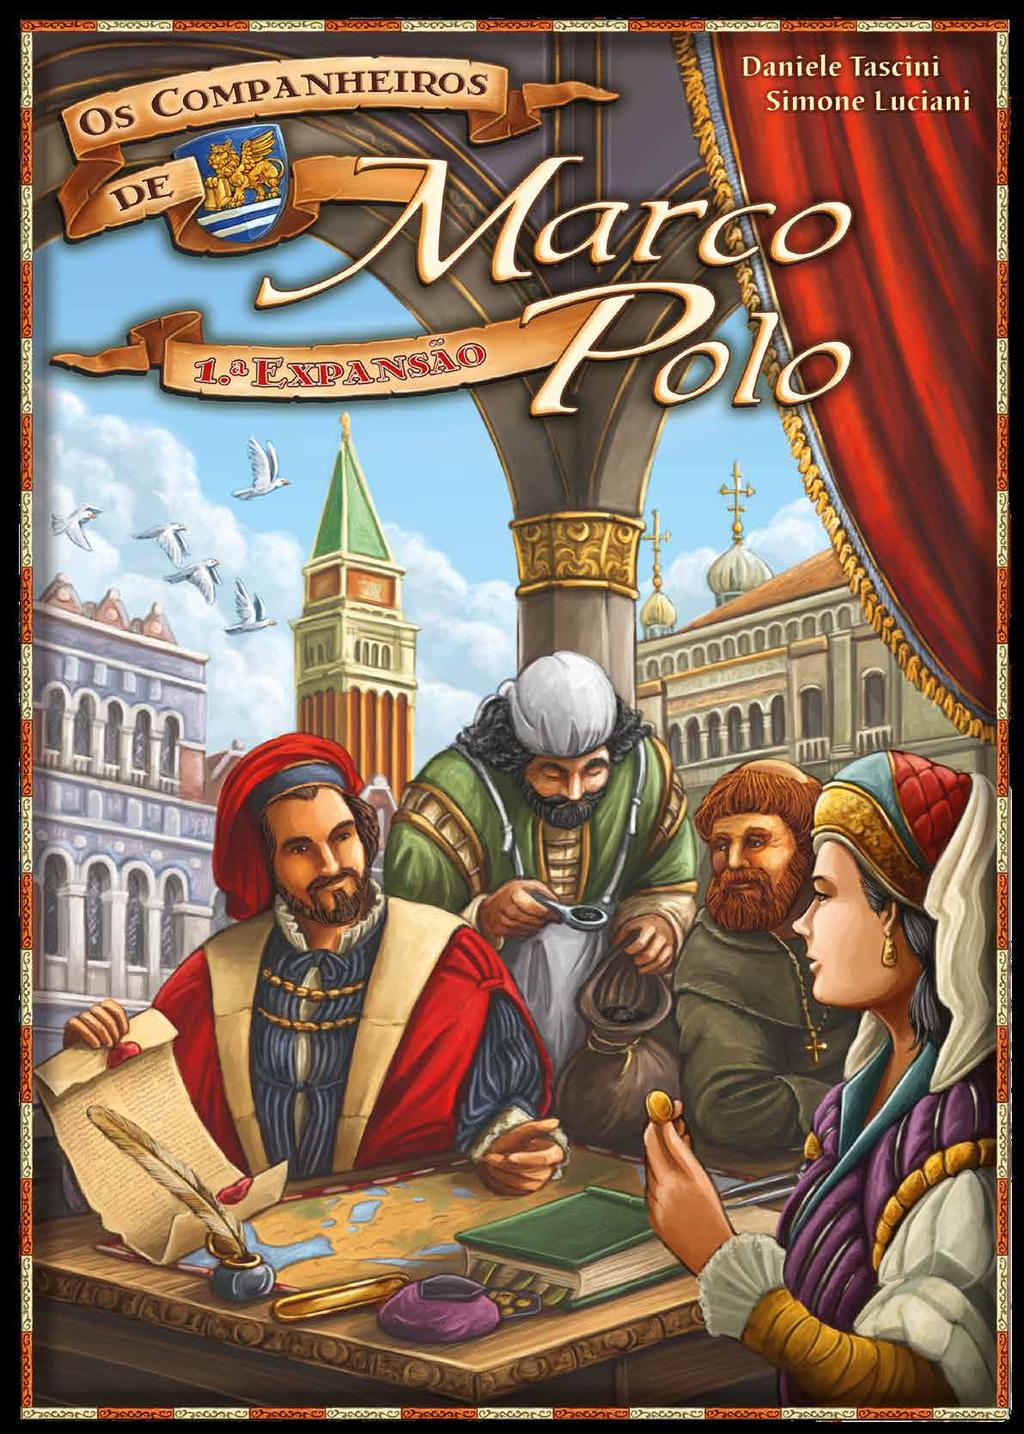 No fim do século XIII, Veneza era uma próspera república onde o comércio se encontrava no auge. Em 1295, depois de uma longa jornada, Marco Polo volta para sua cidade natal.